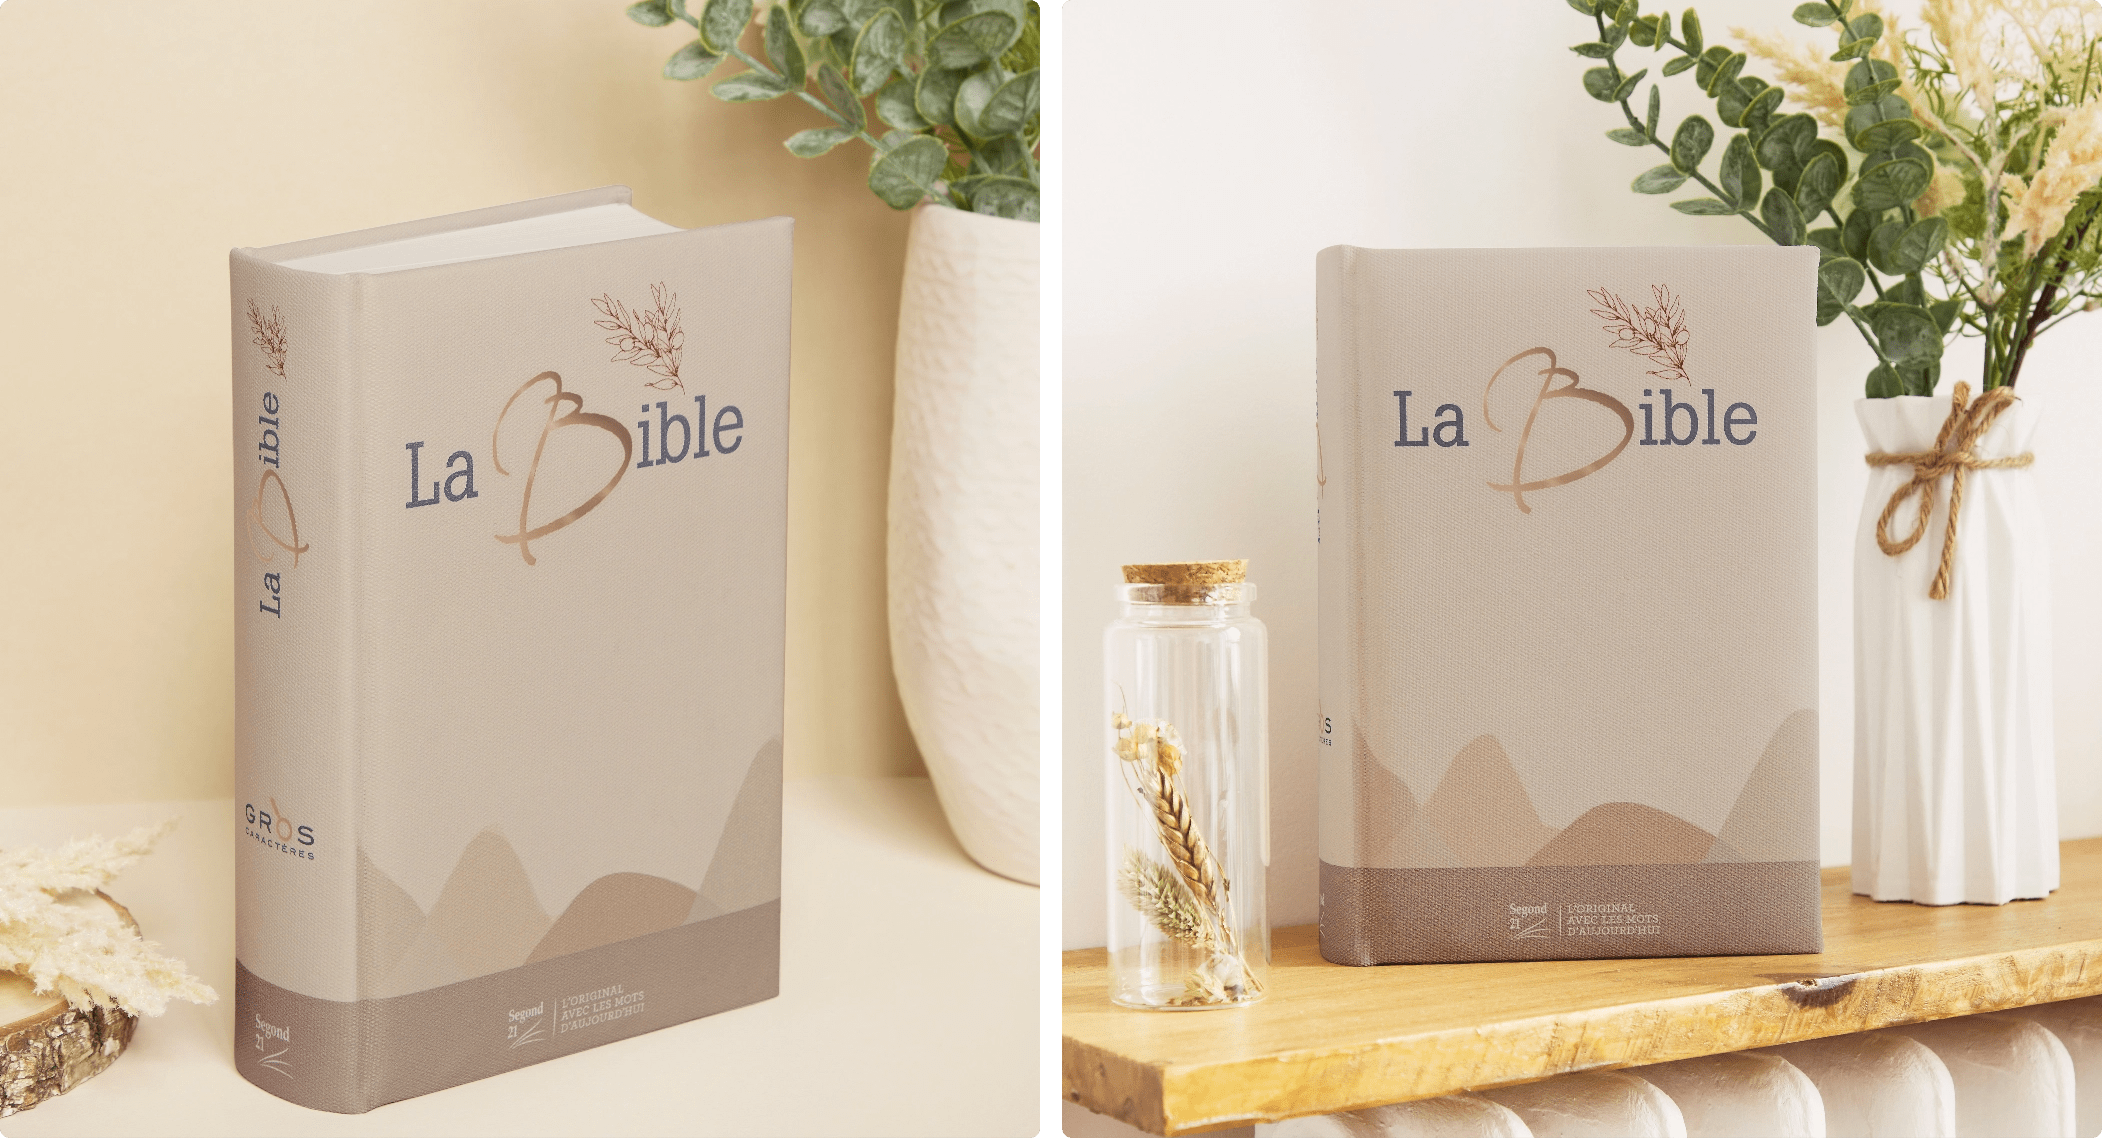 La Bible design by Soeur_co